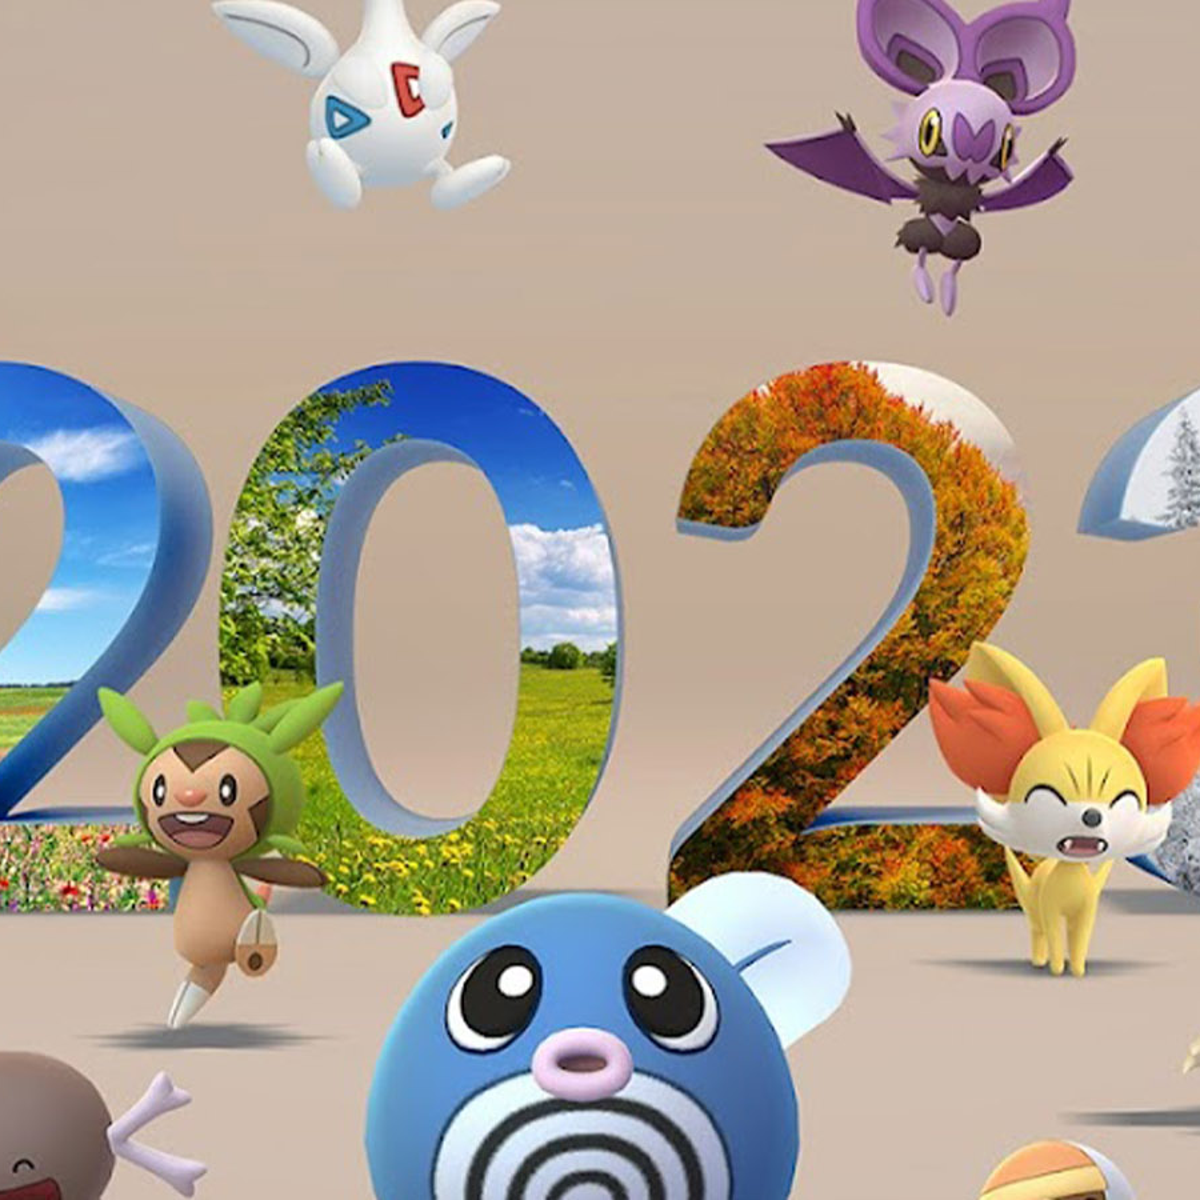 Pokémon Day 2020: Greninja é eleito o Pokémon do ano pelos fãs